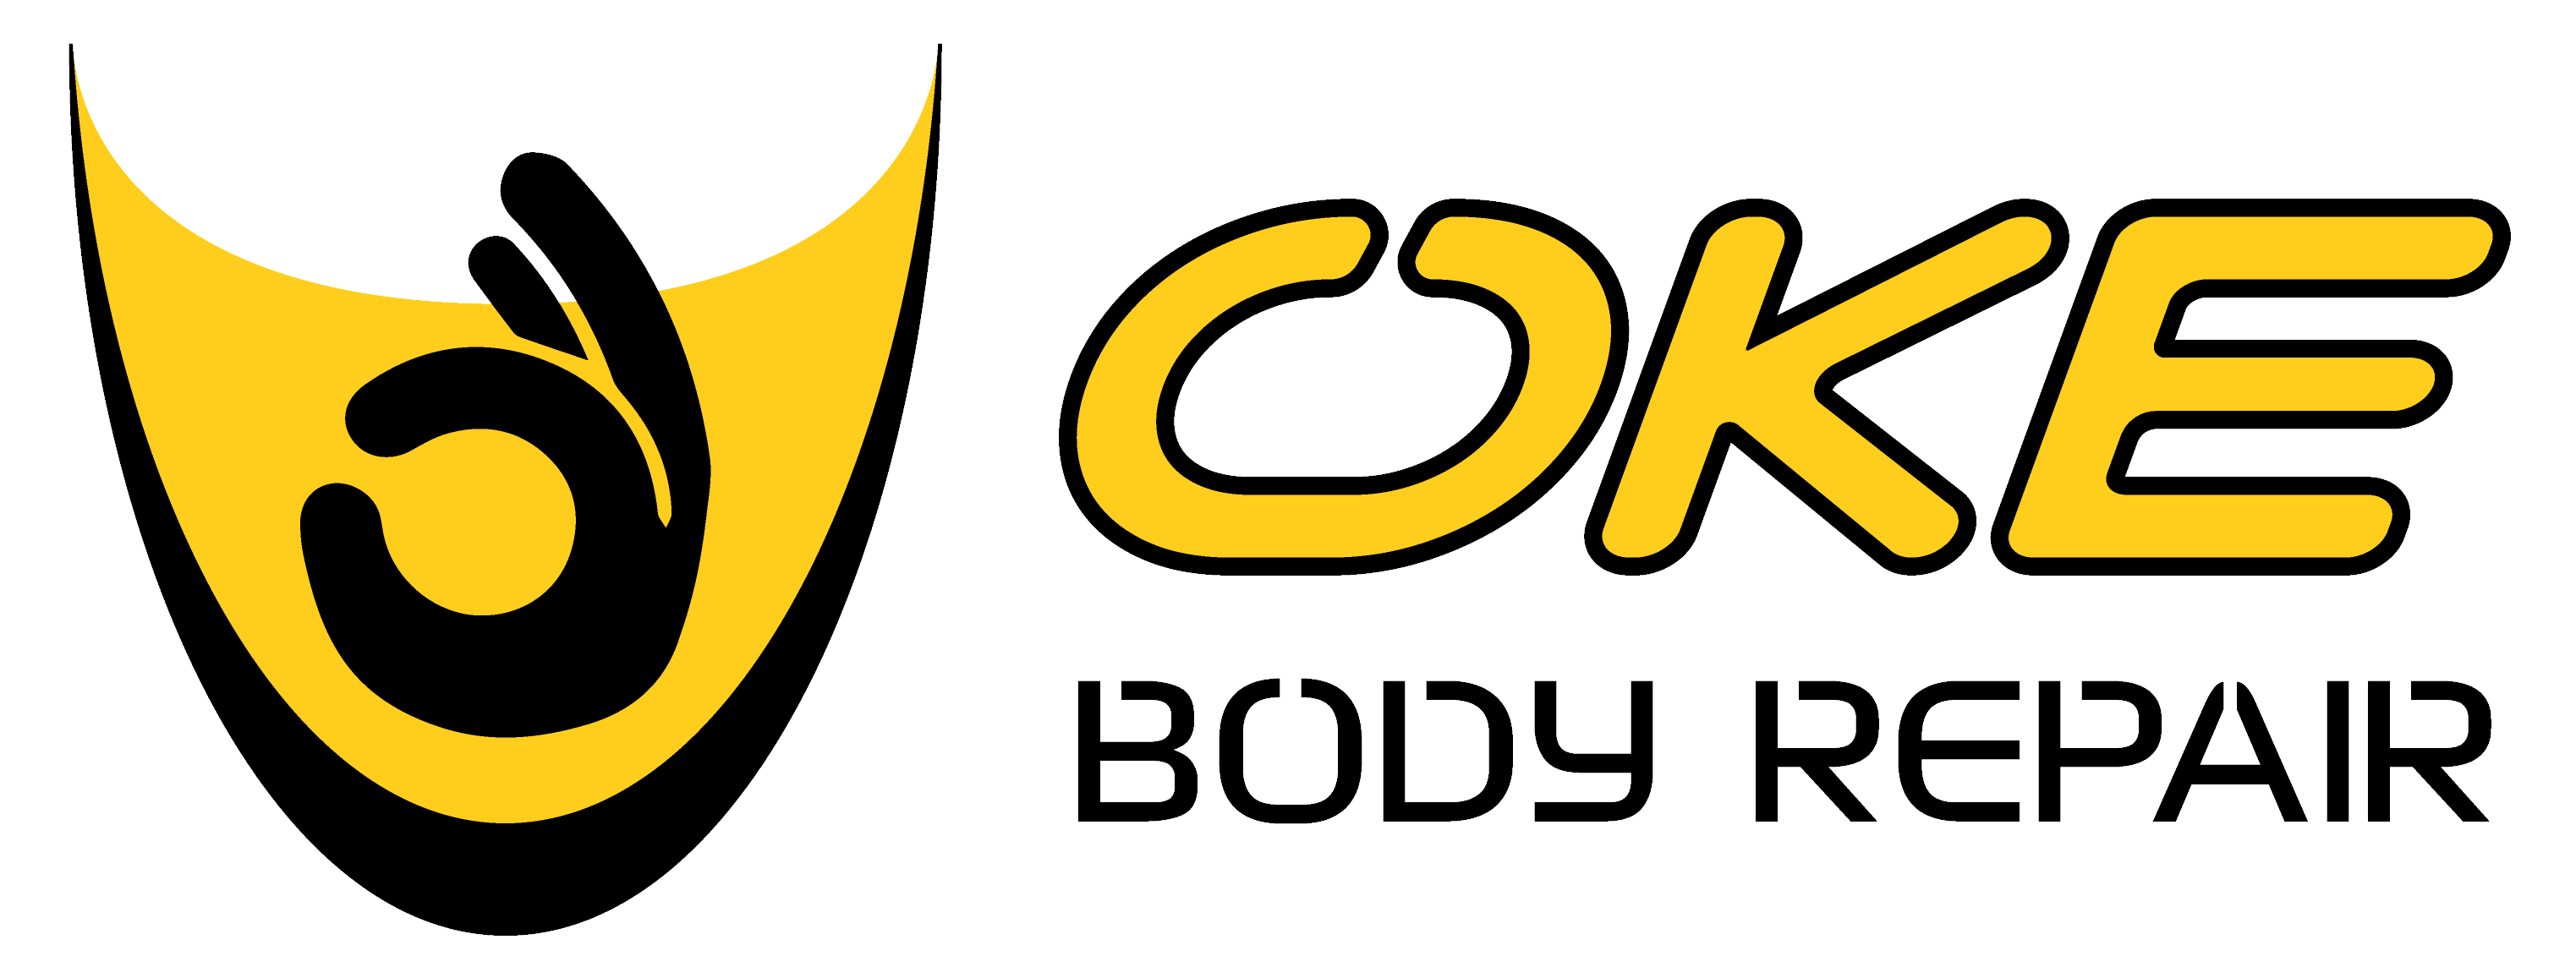 oke body repair logo